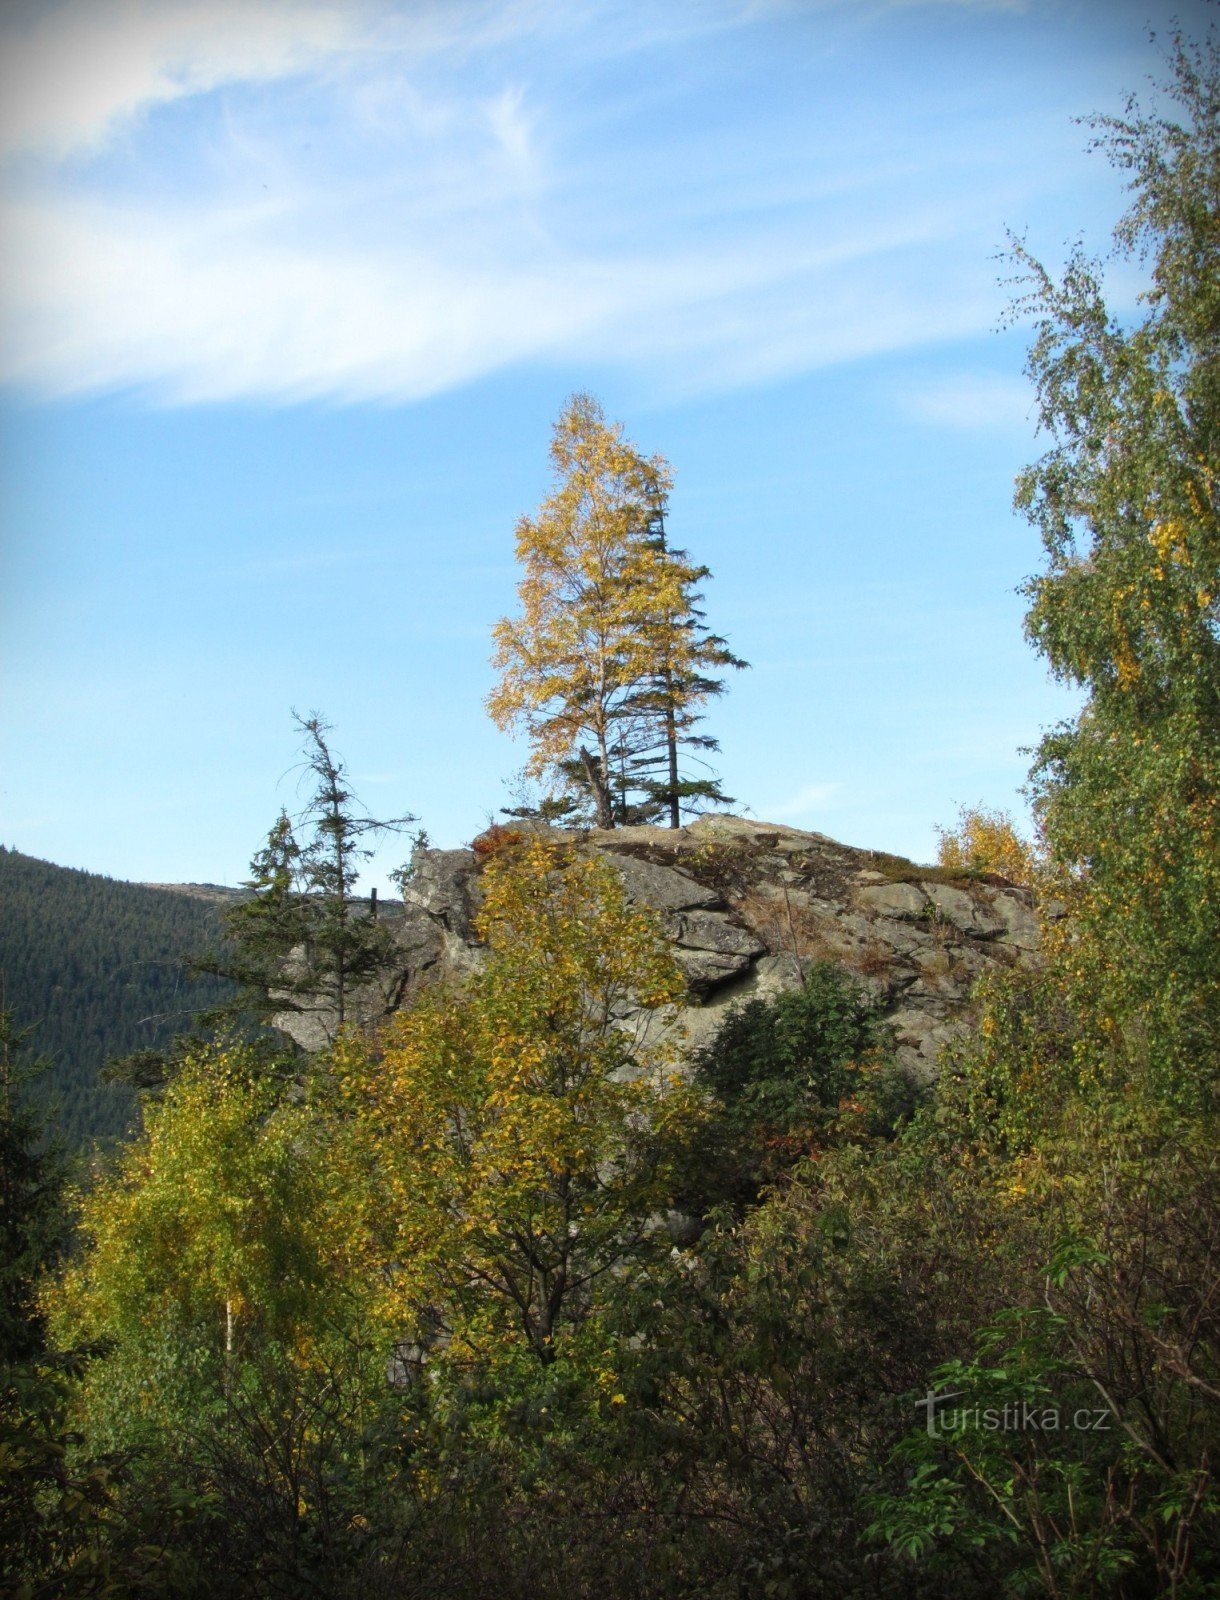 Stânca Kamzičí deasupra văii Bílé potok - Munții Jeseníky